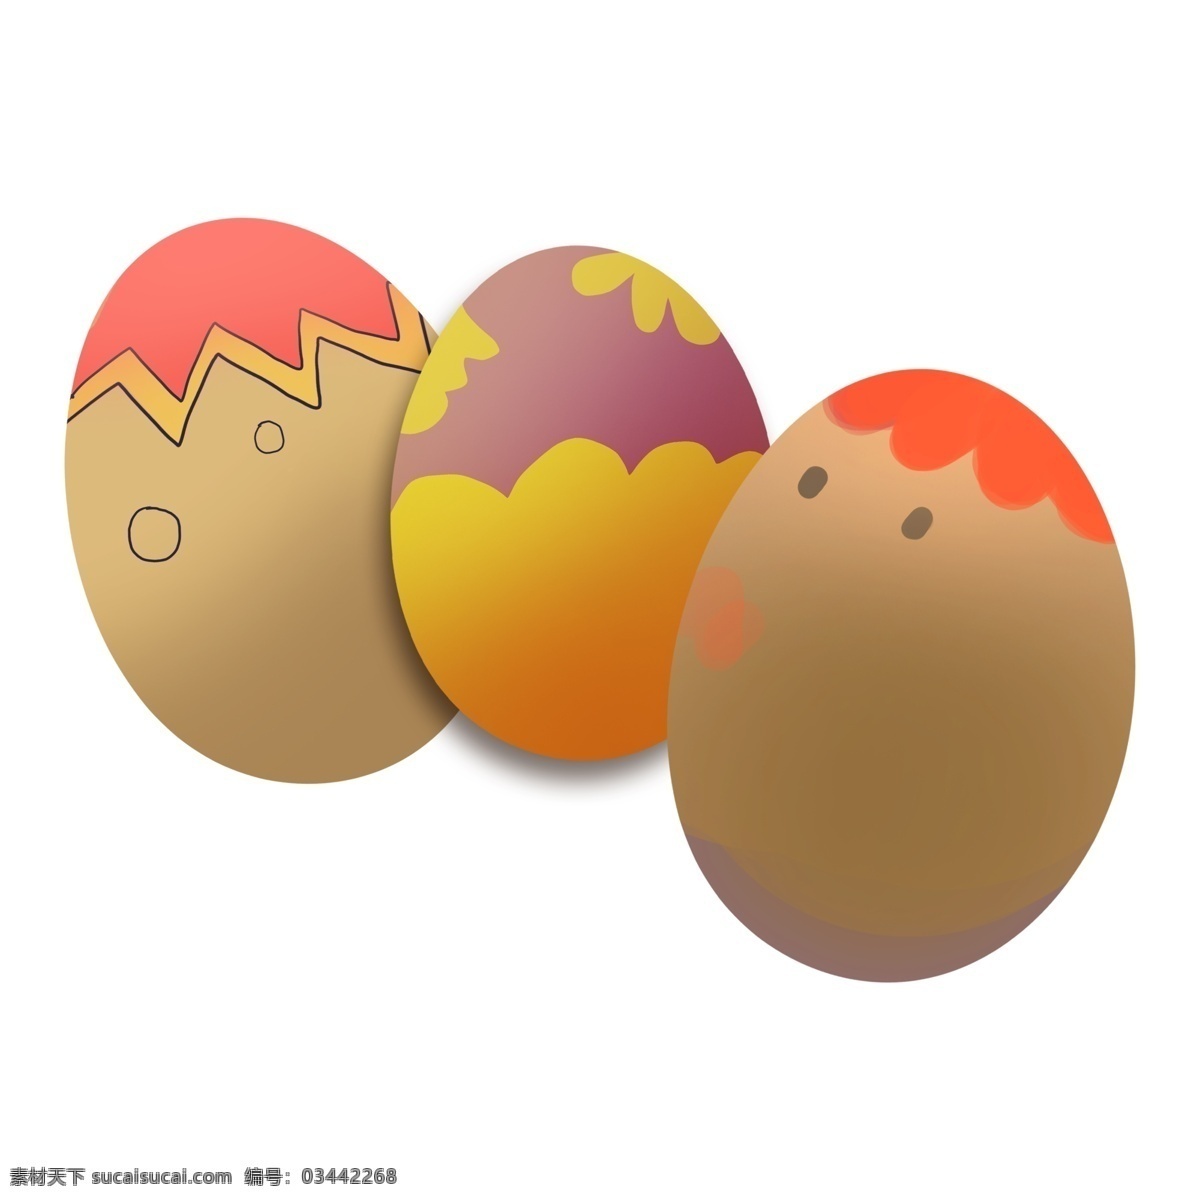 复活节 节日 气氛 彩蛋 元素 椭圆彩蛋 彩蛋装饰 彩蛋插画 立体彩蛋 卡通彩蛋